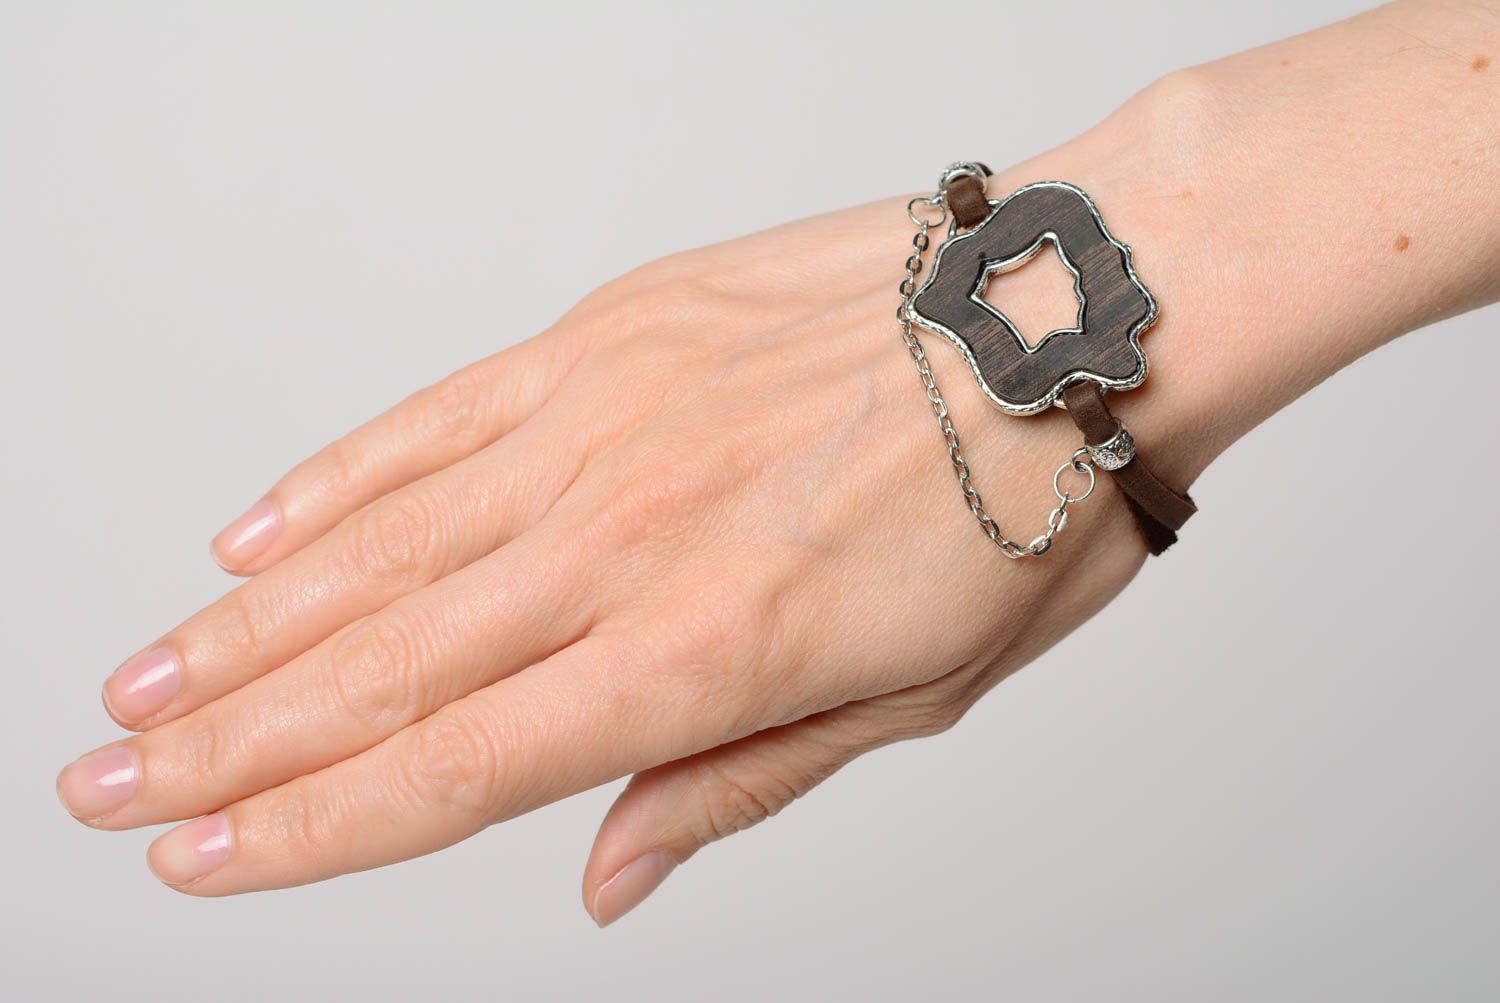 Feines dünnes Casual Armband mit Anhänger aus Metall in Braun für elegante Looks foto 3